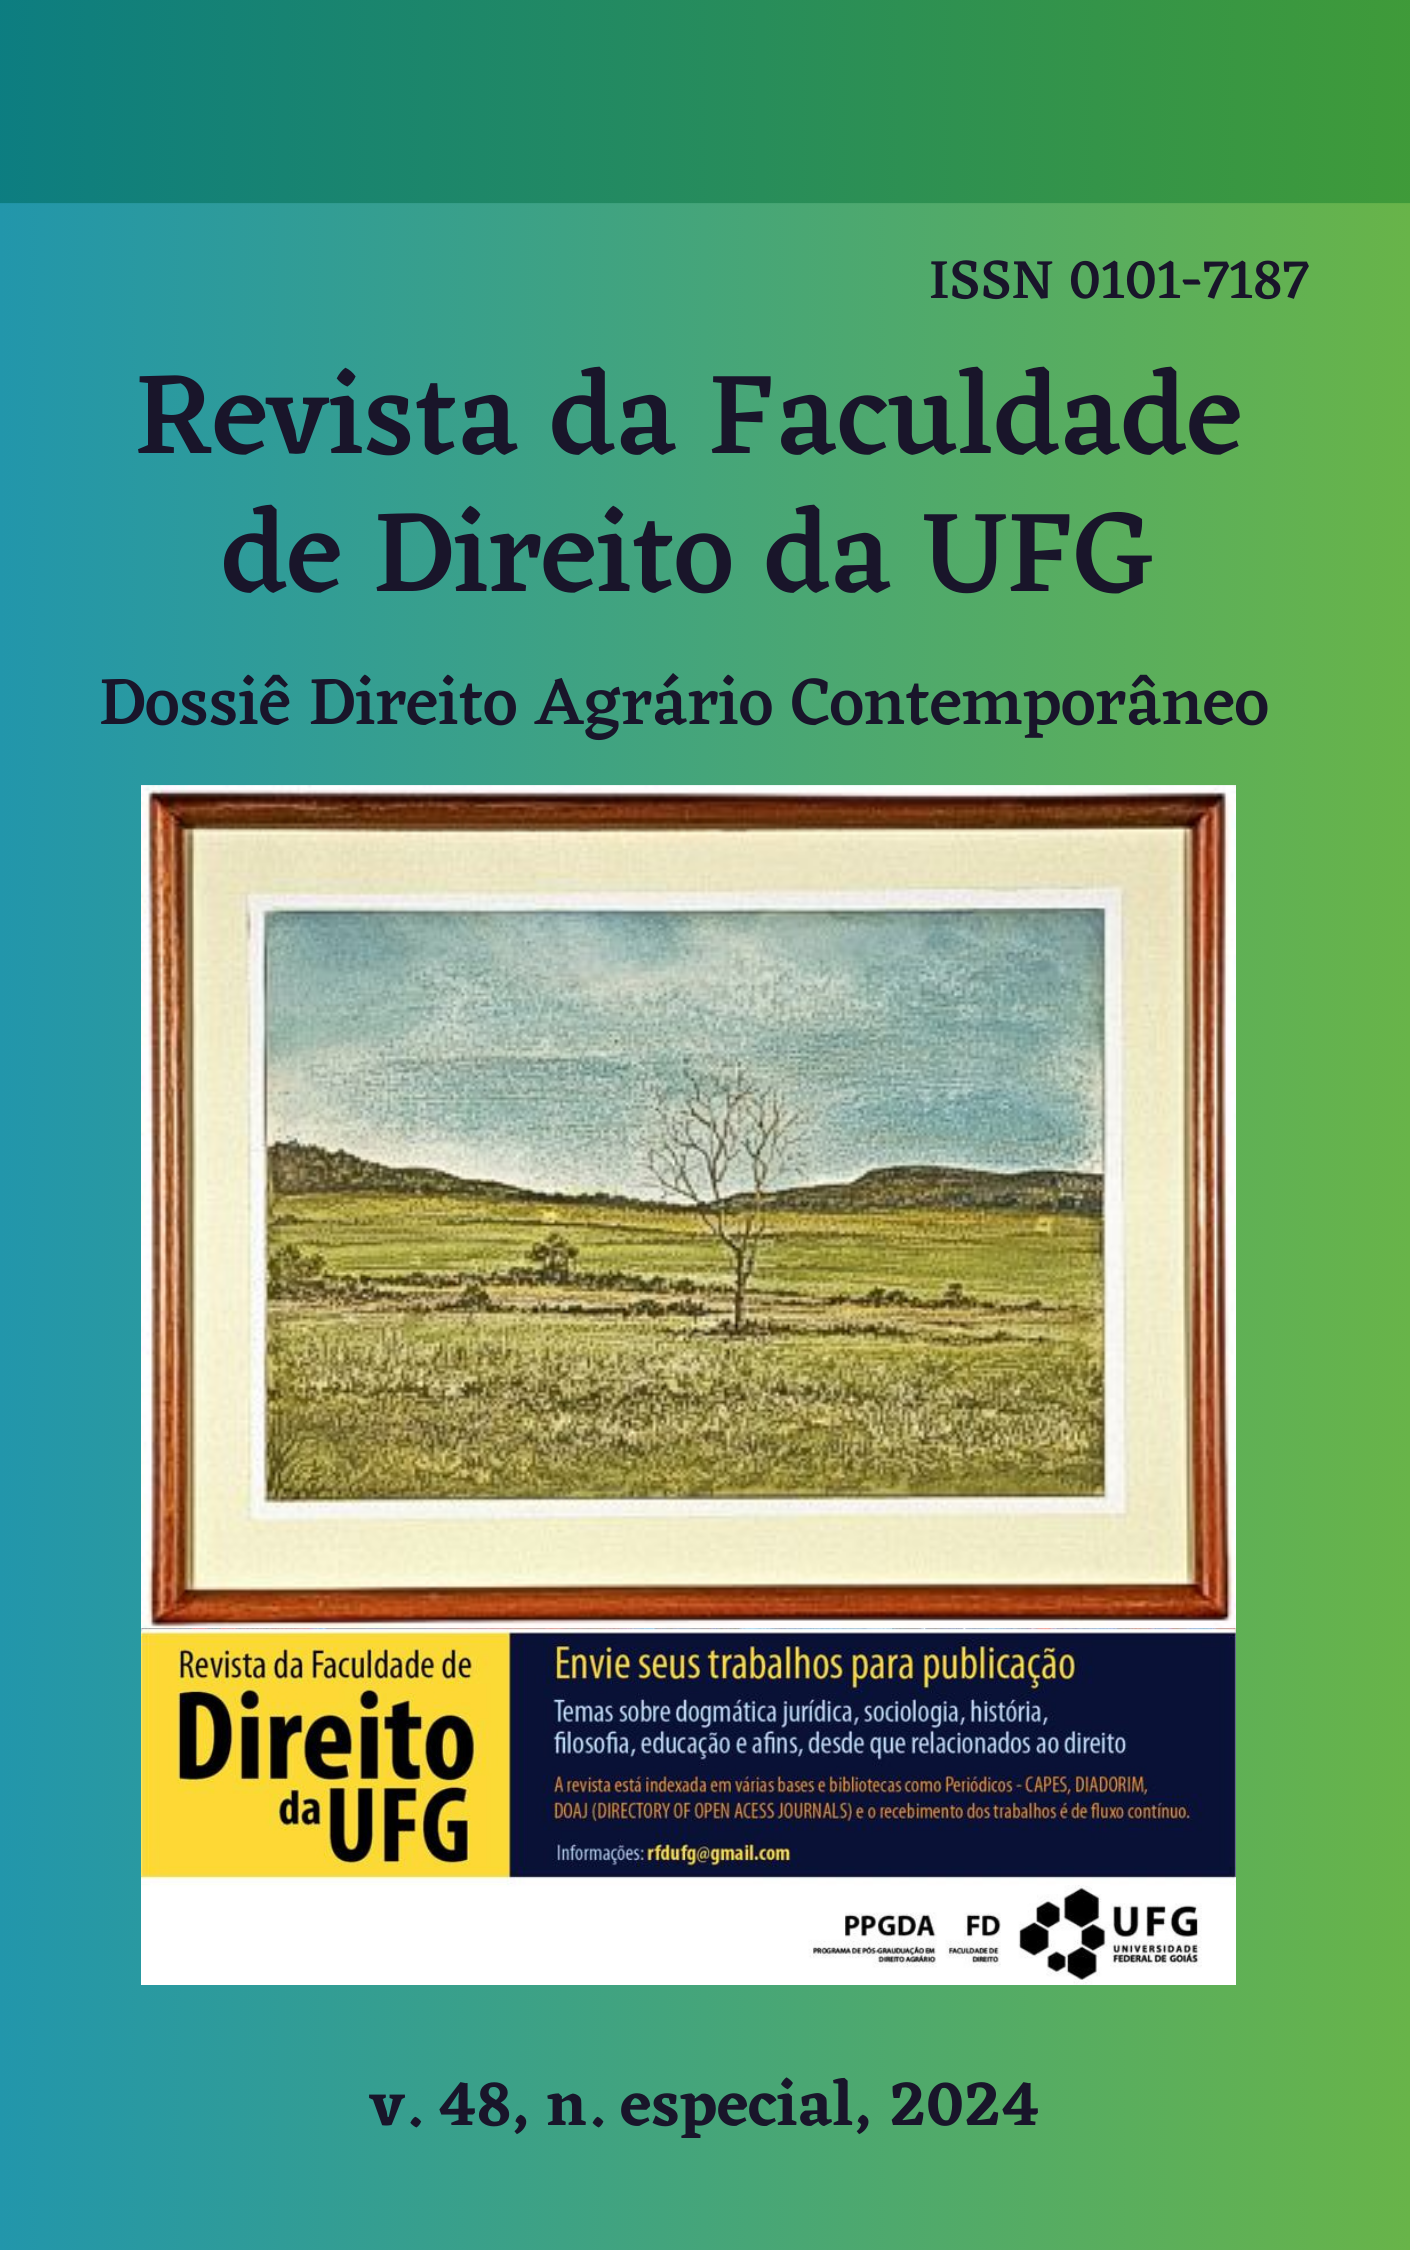 					View Vol. 48 No. especial (2024): REVISTA DA FACULDADE DE DIREITO DA UFG - Dossiê Direito Agrário Contemporâneo
				